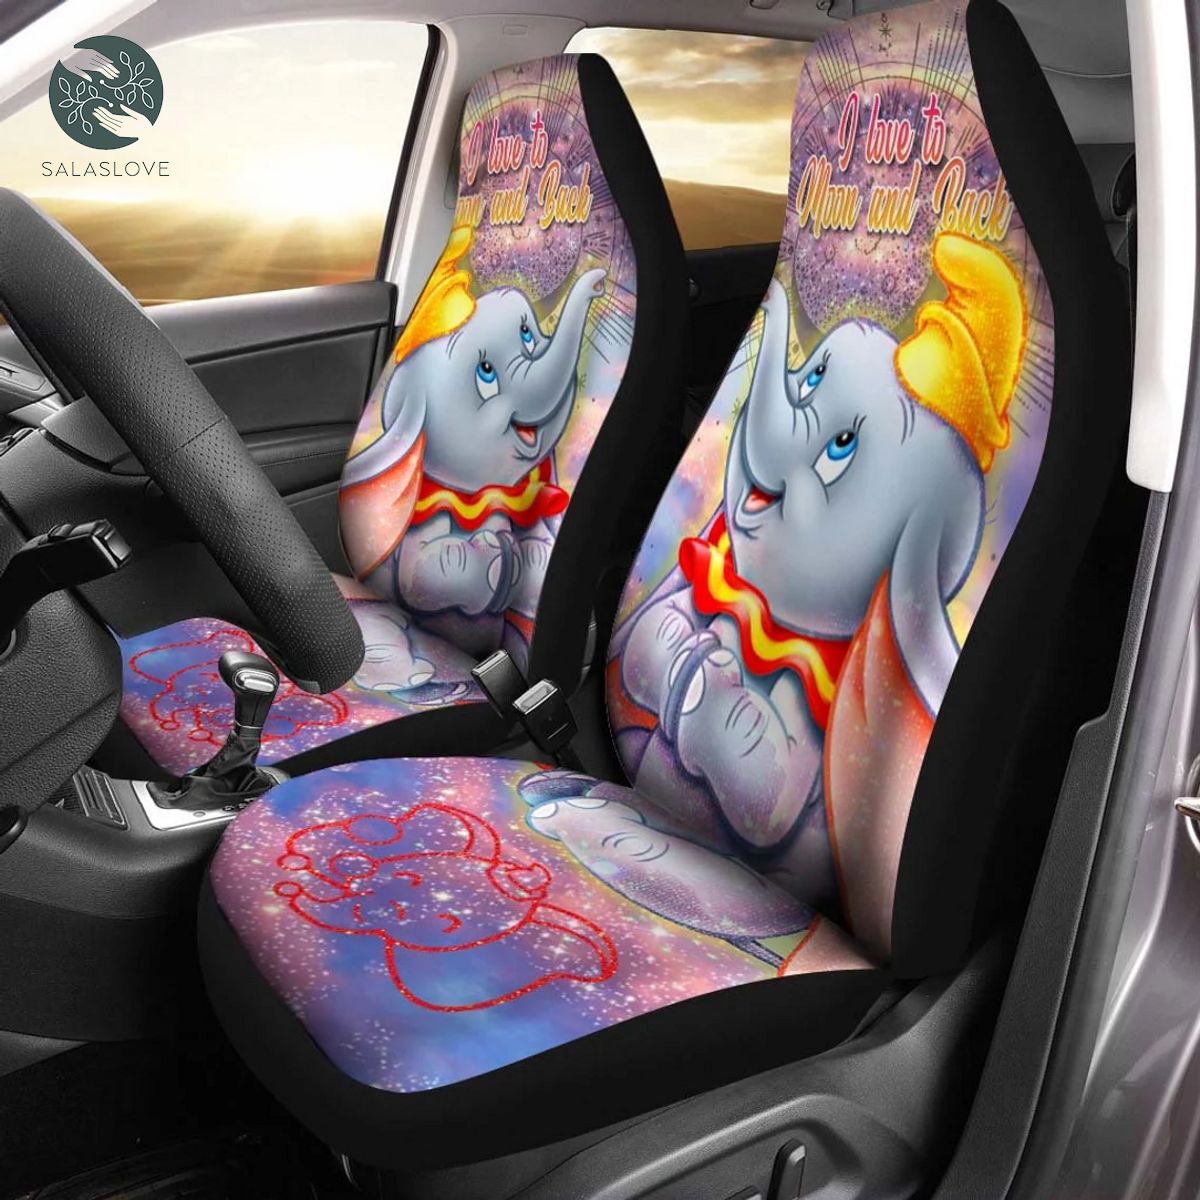 Cute Dumbo Disney Cartoon Car Seat Cover


